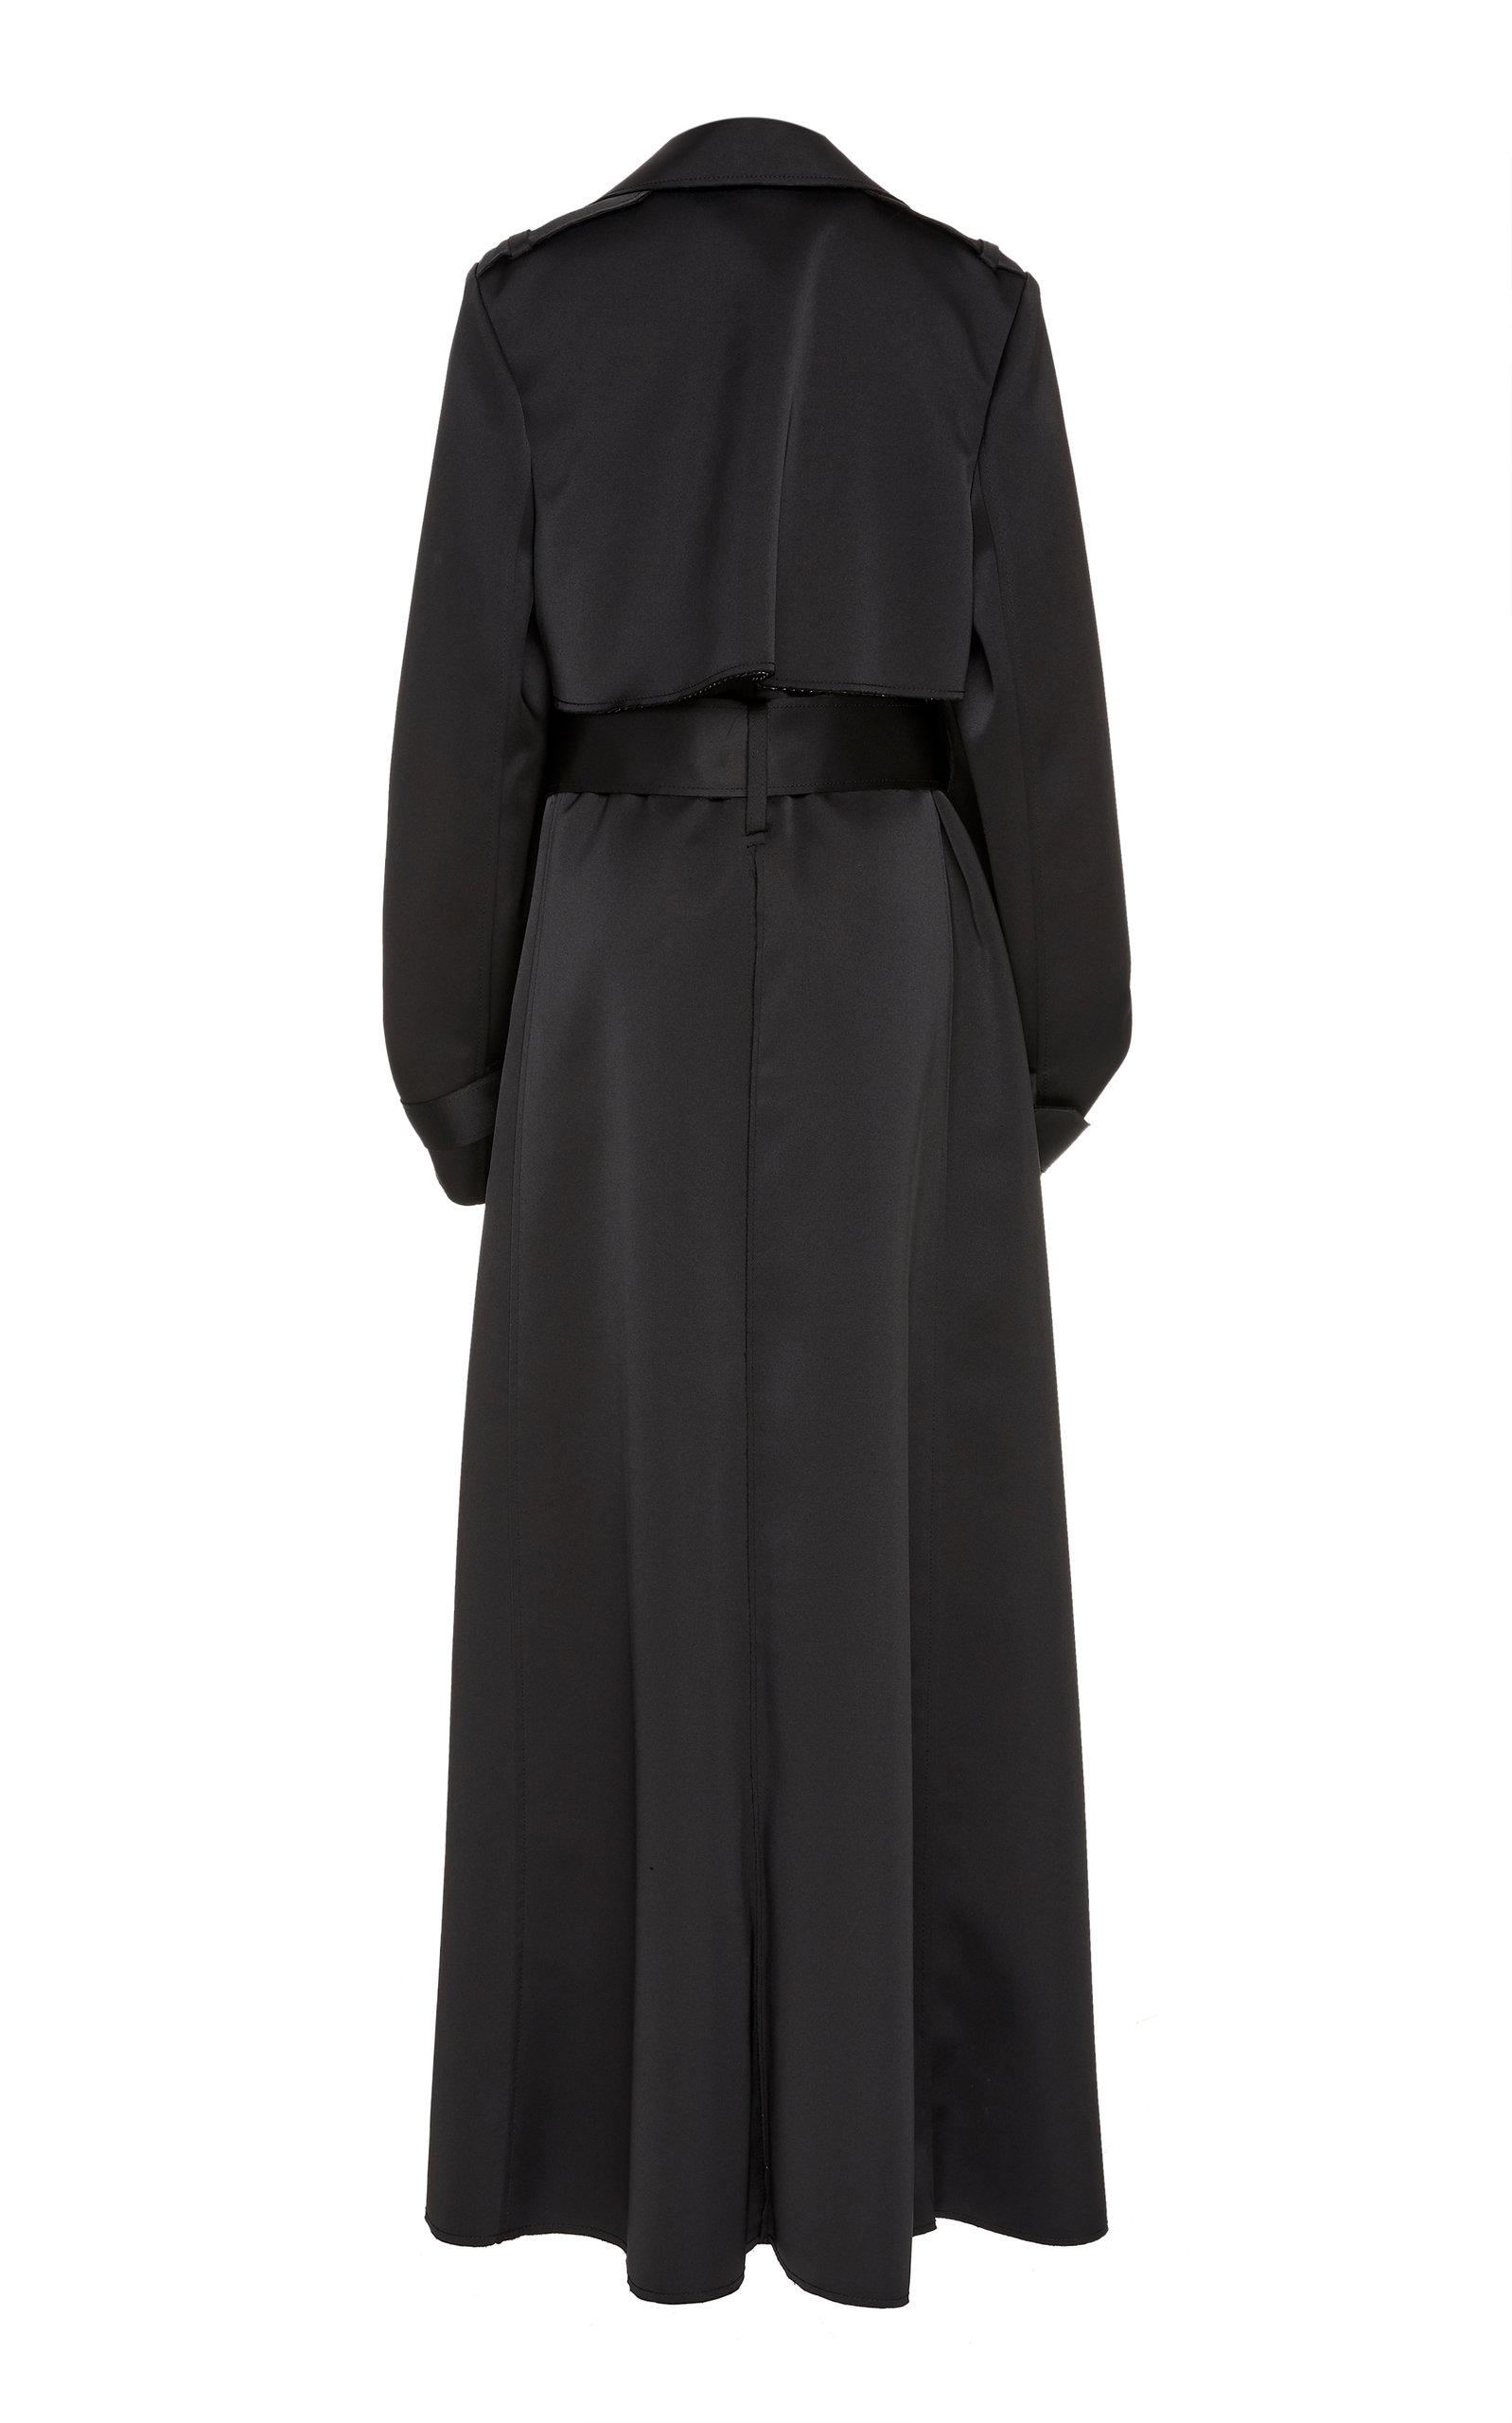 Carolina Herrera Oversized Satin Trench Coat in Black - Lyst